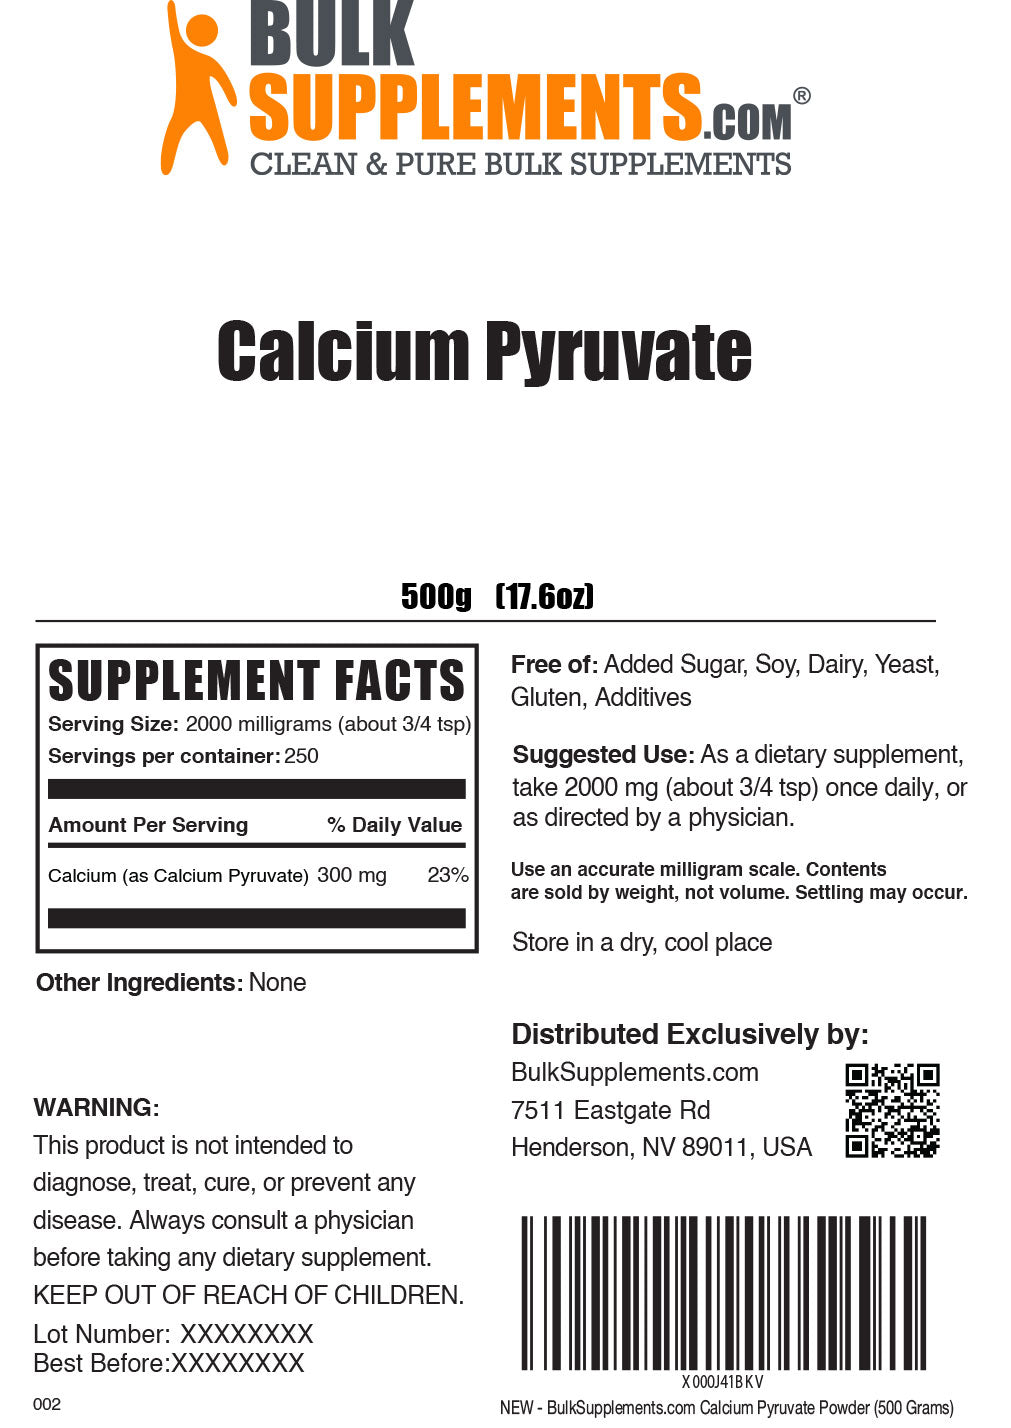 Calcium Pyruvate Label 500g